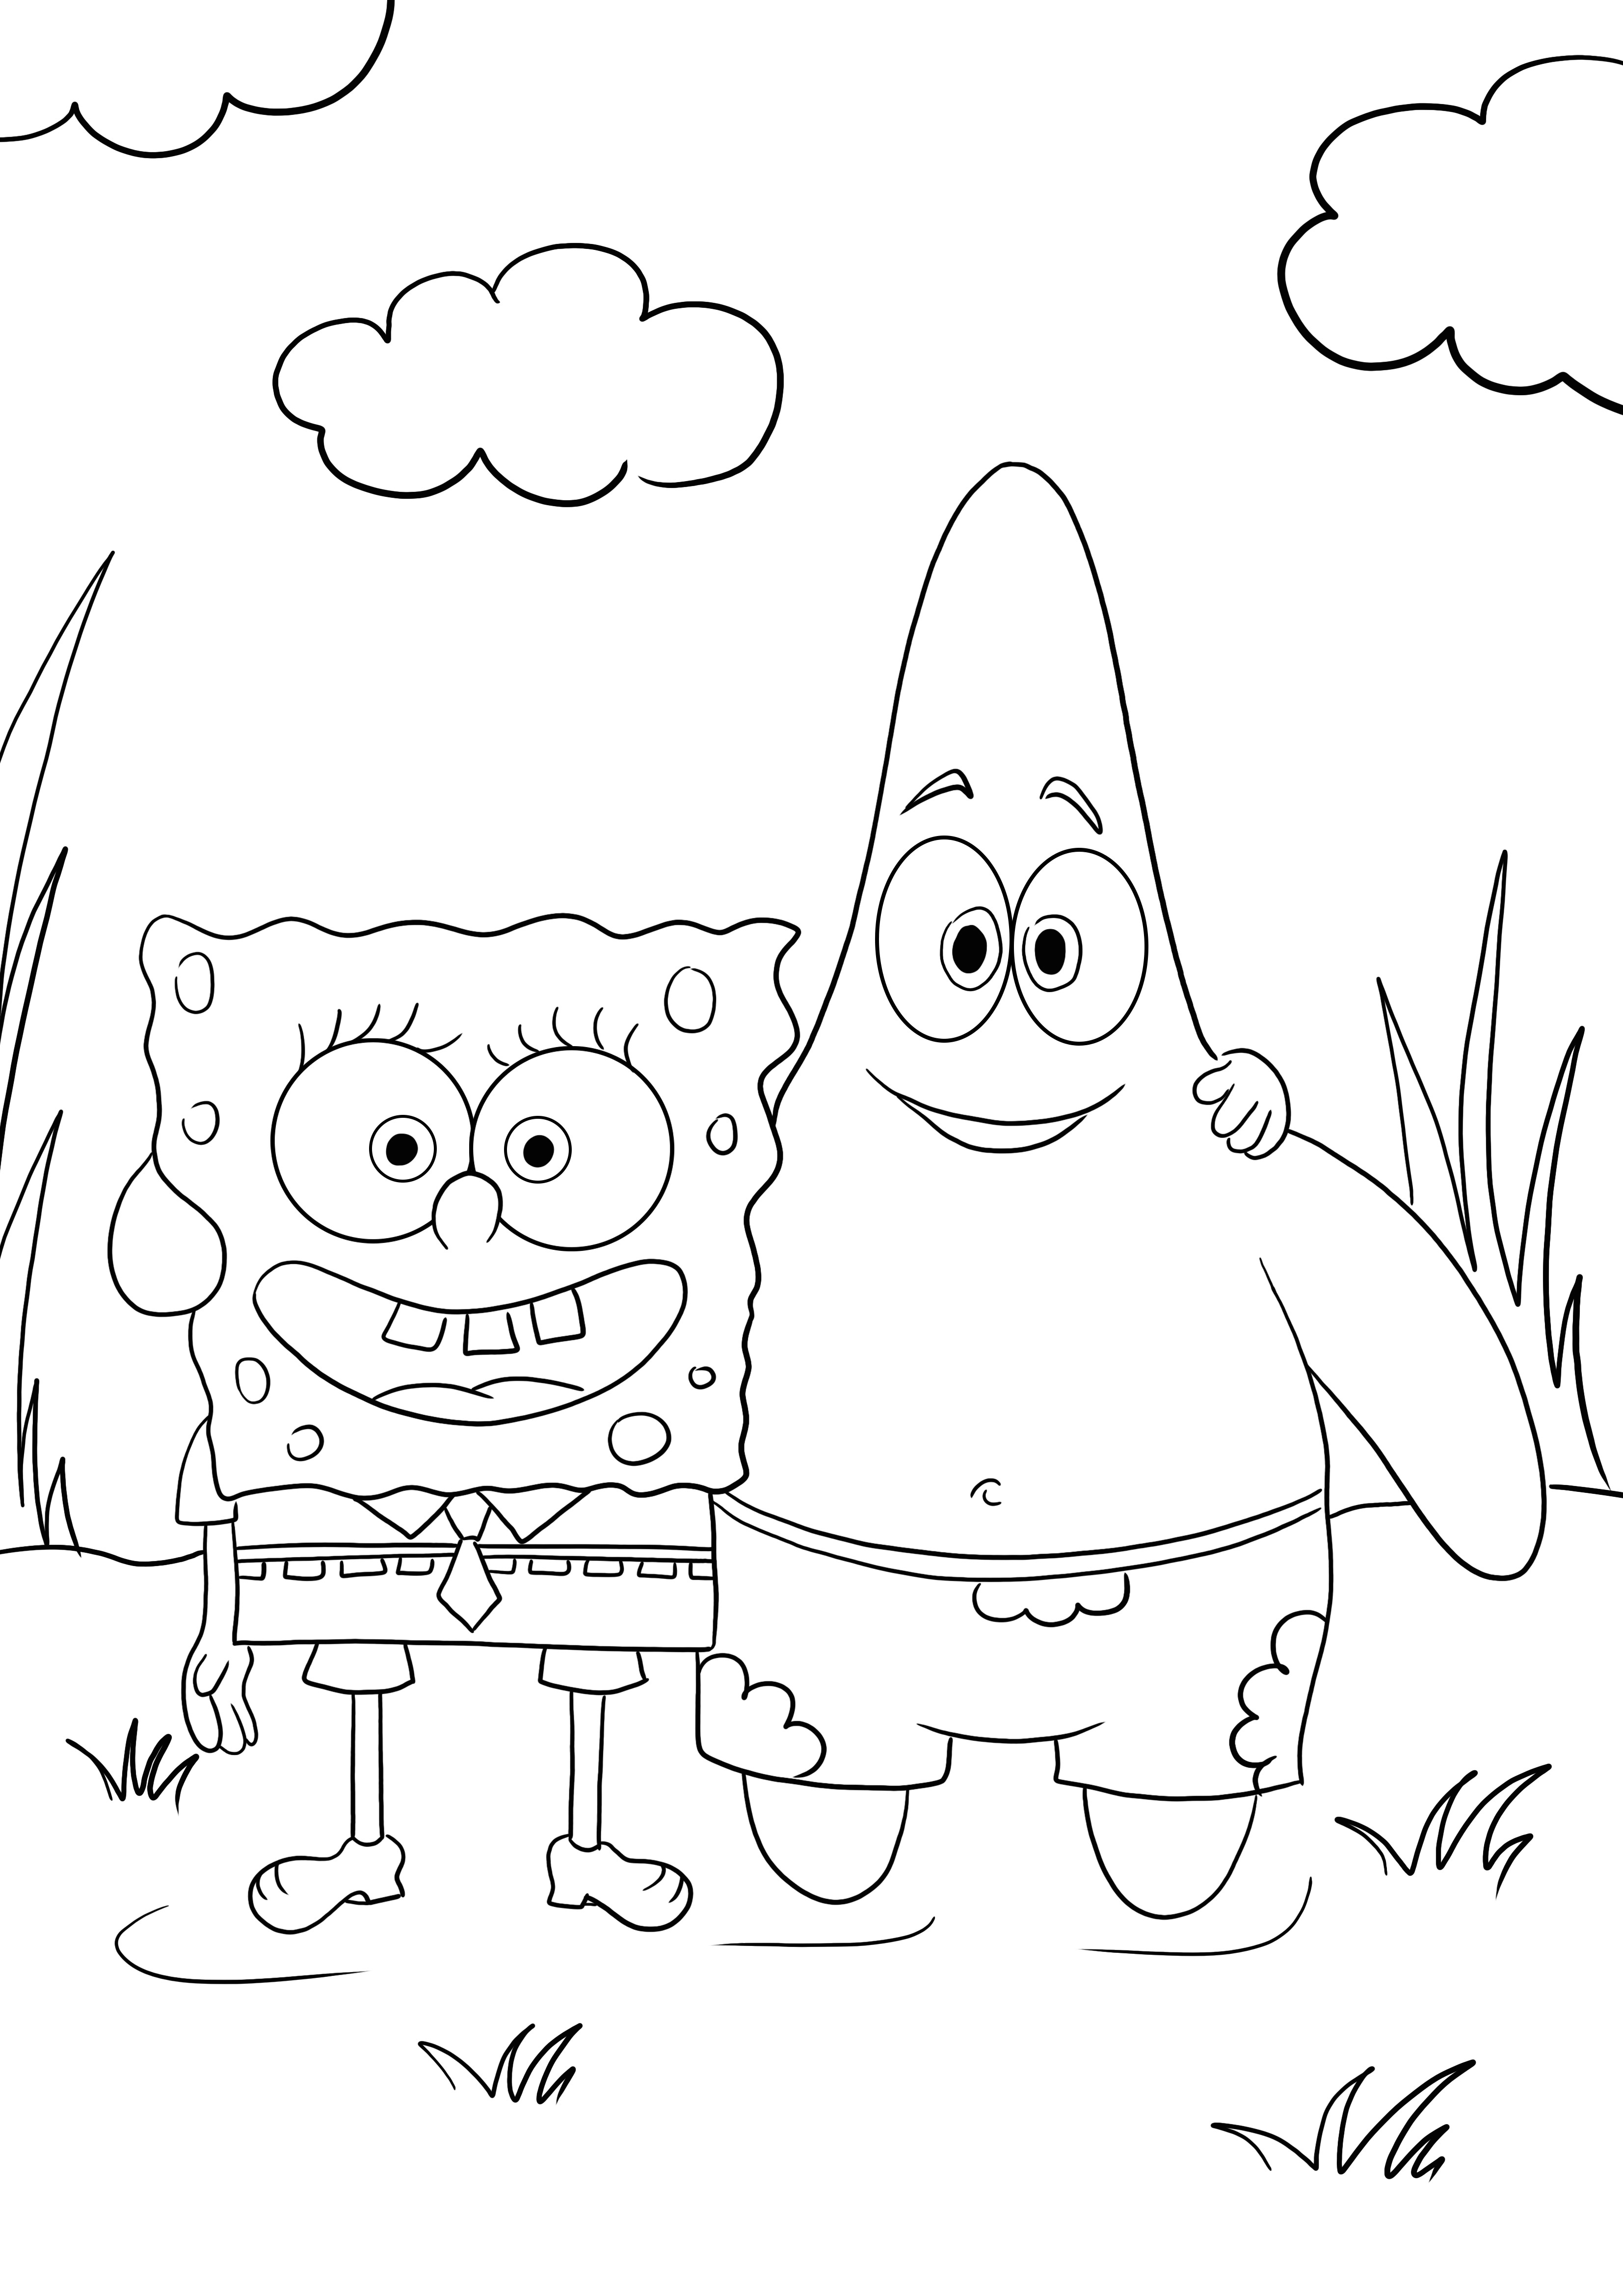 Bob Esponja e seu melhor amigo Patrick grátis para colorir e baixar imagens